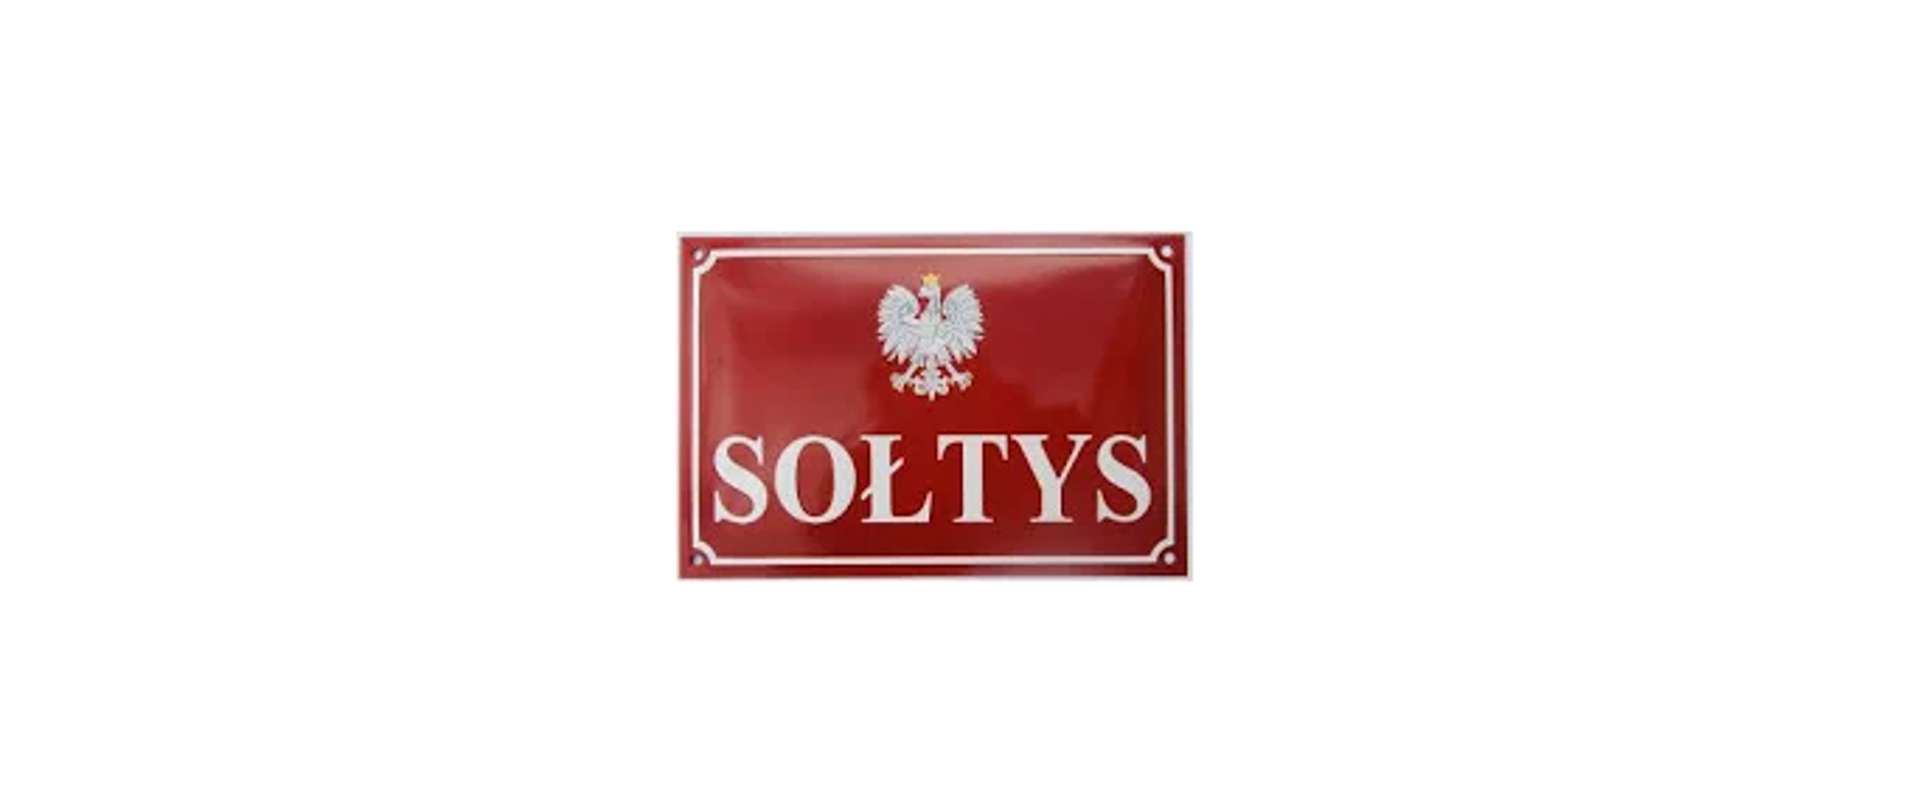 czerwona tablica z godłem Polski i białym napisem "sołtys"